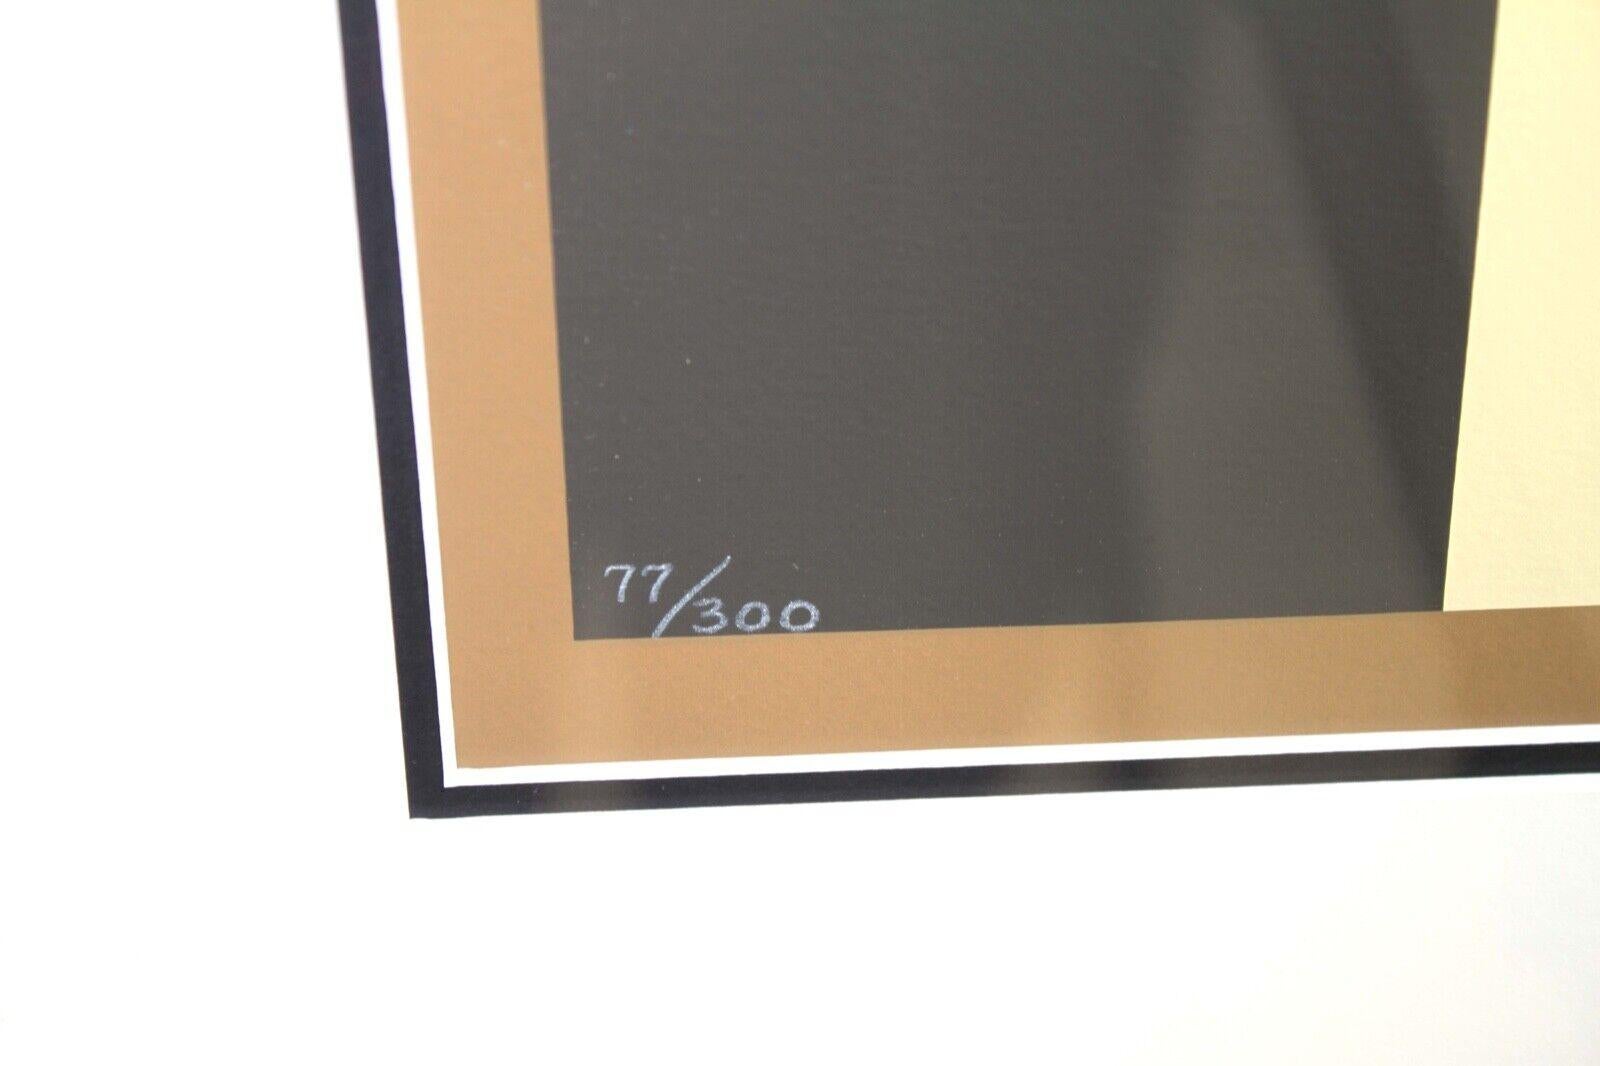 Paper Victor Vasarely Chessboard Signed Op Art Modern Silkscreen 77/300 Framed, 1975